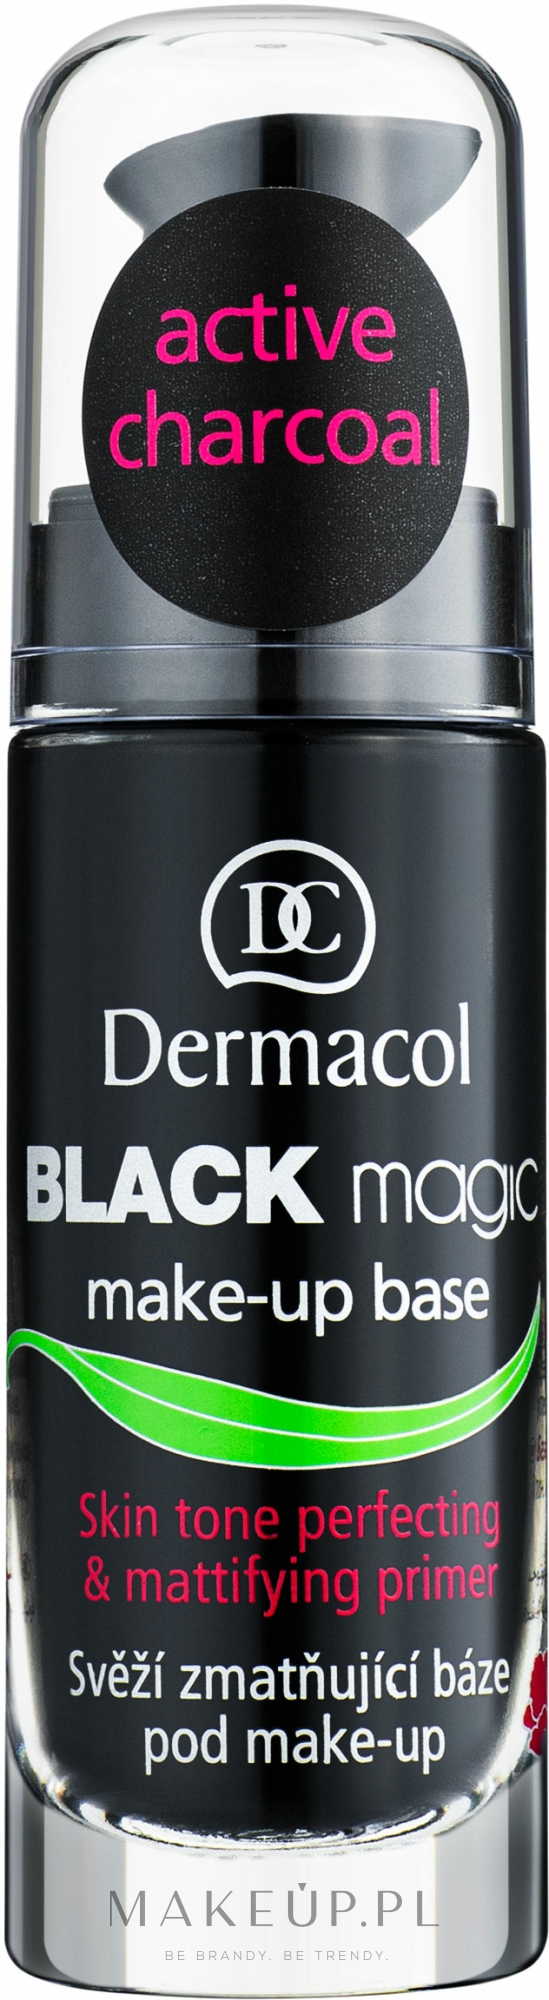 Detoksykująca baza pod makijaż - Dermacol Black Magic Makeup Primer — Zdjęcie 20 ml